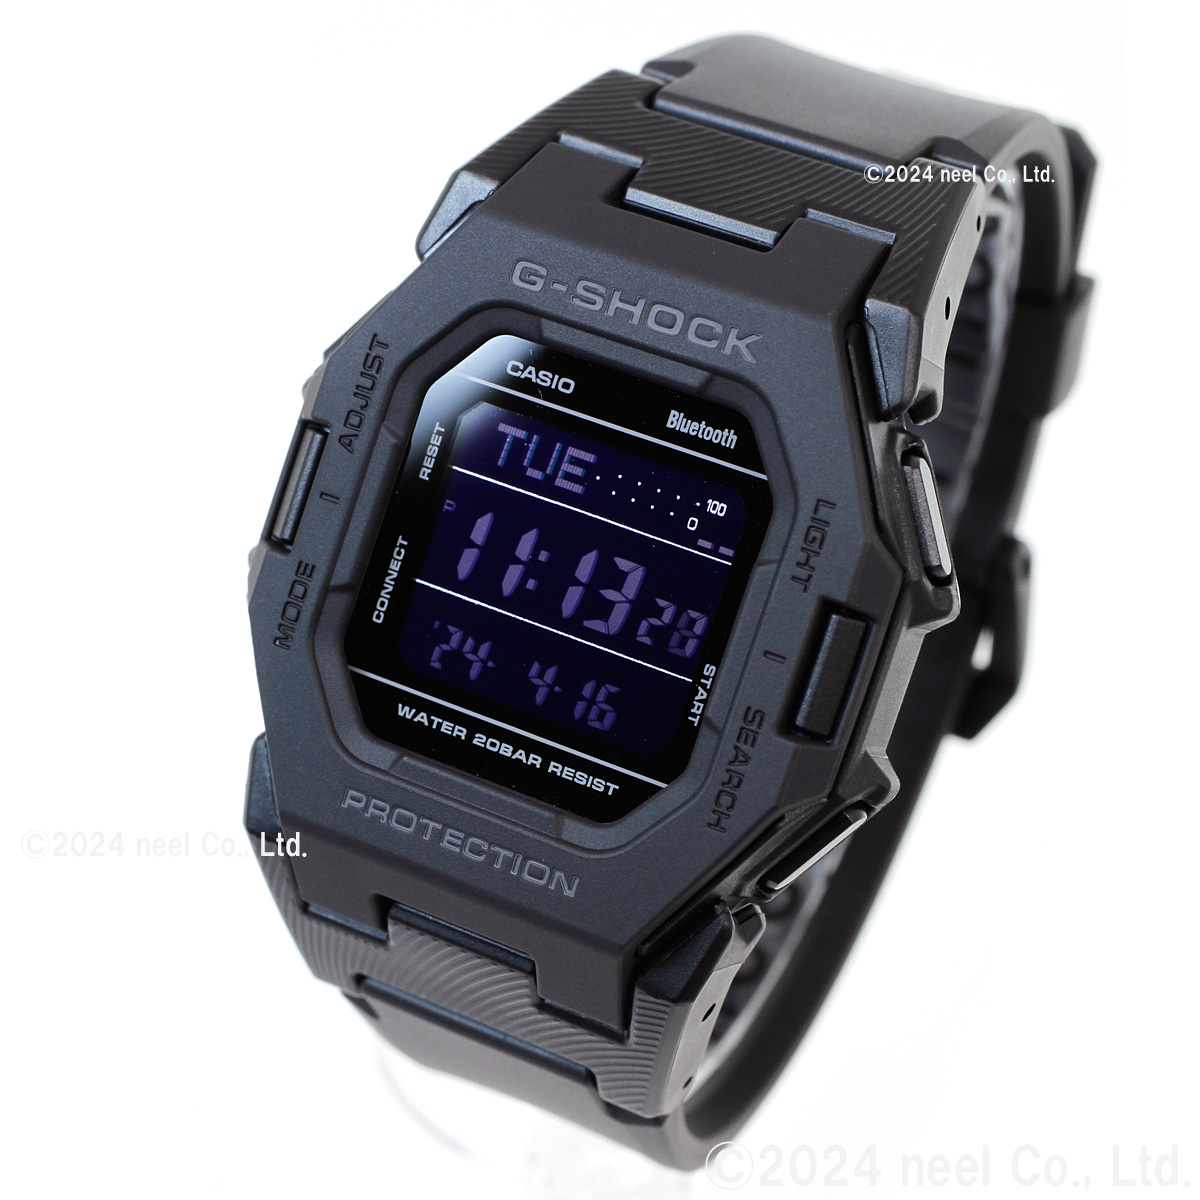 18日/19日が超お得！ポイントUP！Gショック G-SHOCK デジタル 腕時計 カシオ CASIO GD-B500-1JF 小型化モデル ブラック  ジーショック